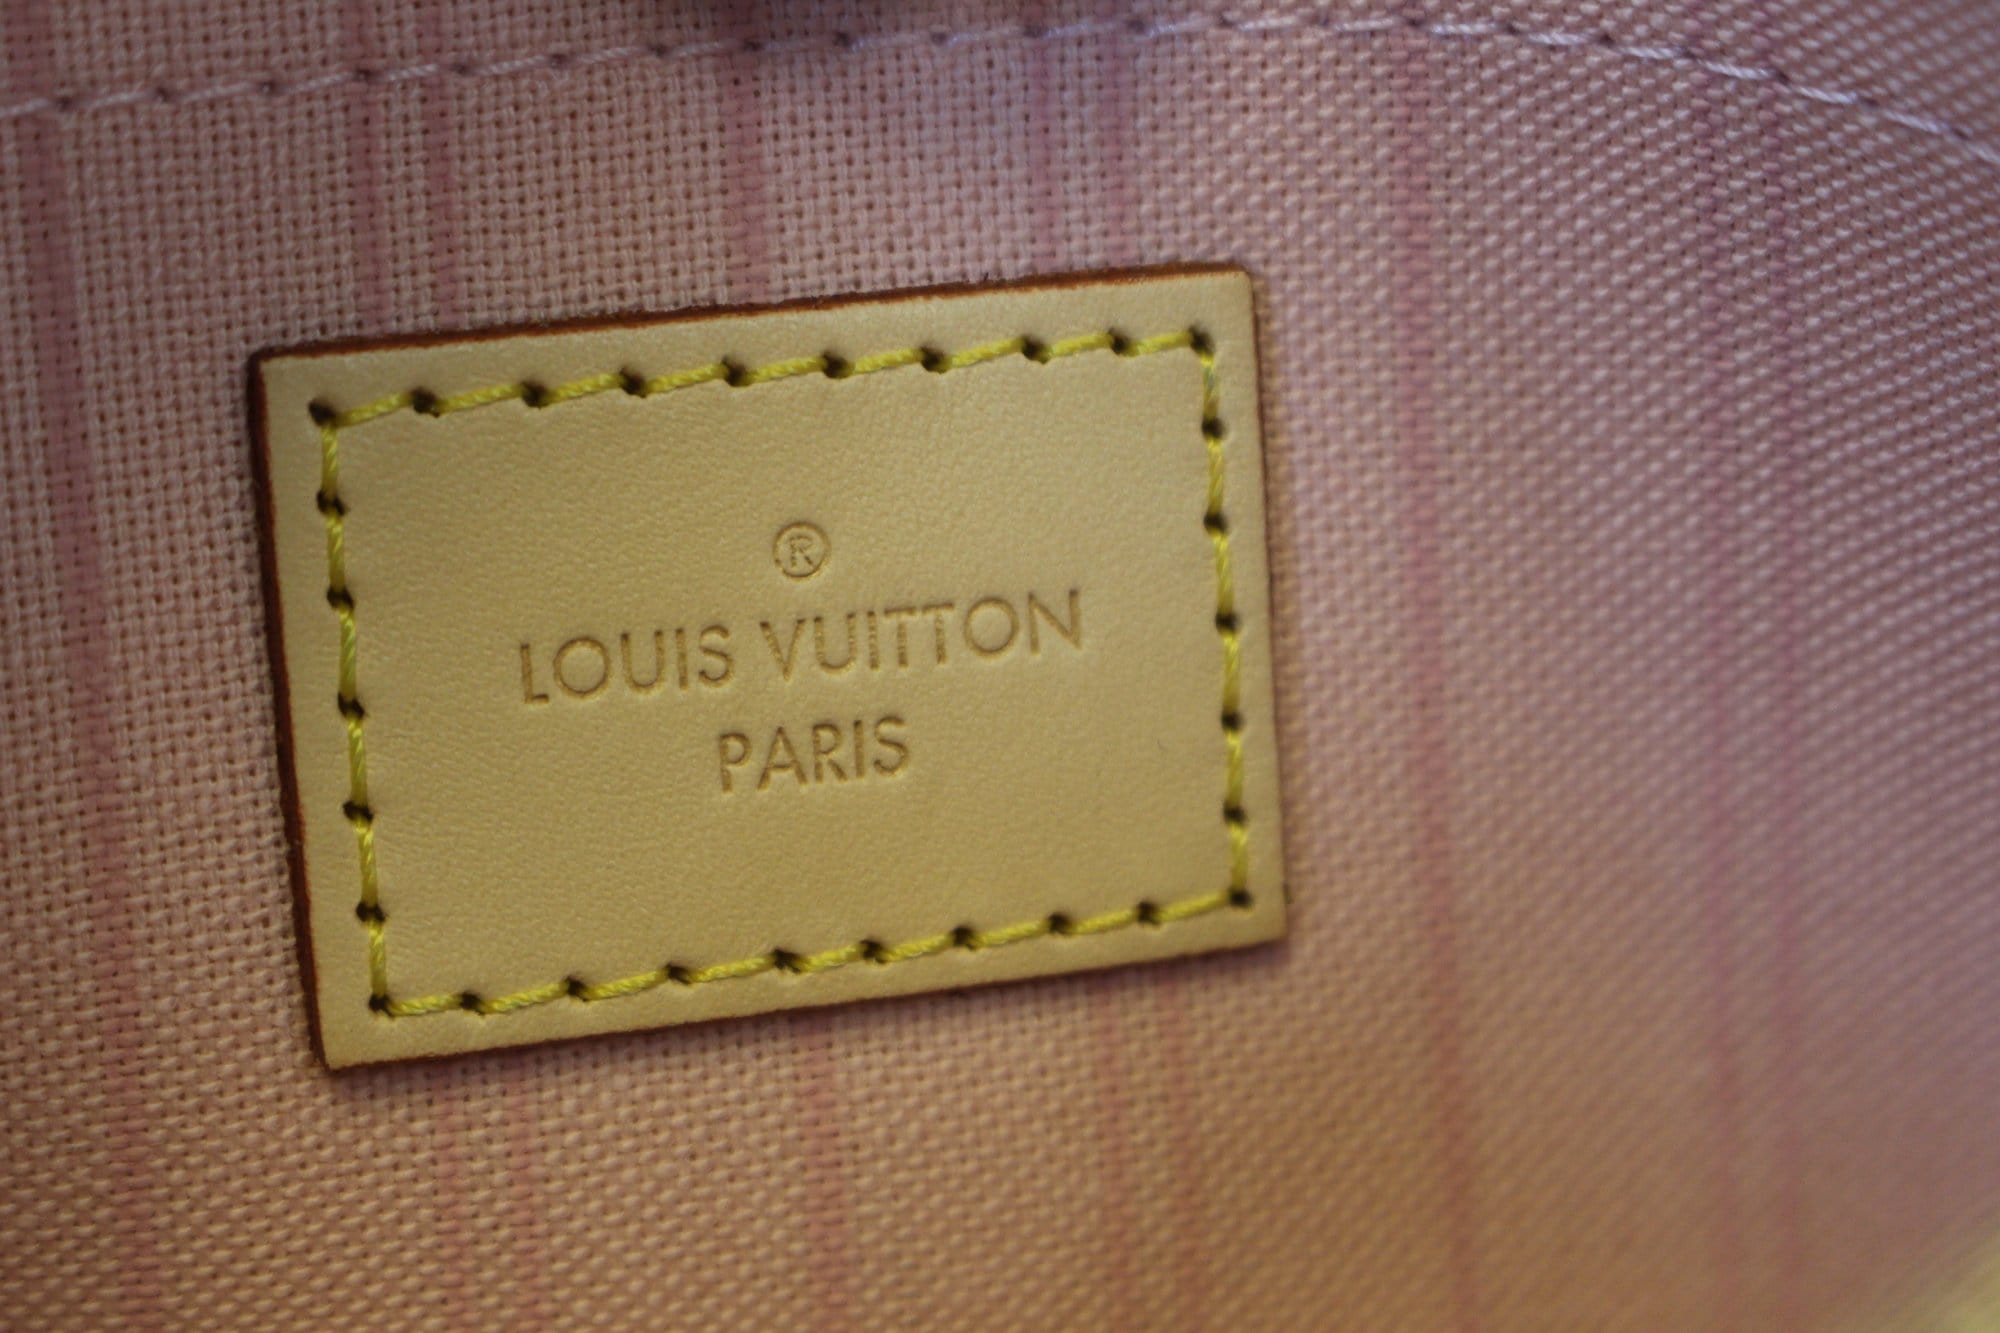 Mila - MM - Azur - Vuitton - N60027 – Белые женские кошельки Louis Vuitton  - Damier - Pochette - Louis Vuitton Brazza Wallet In Taiga 7.5in 19cm Blac